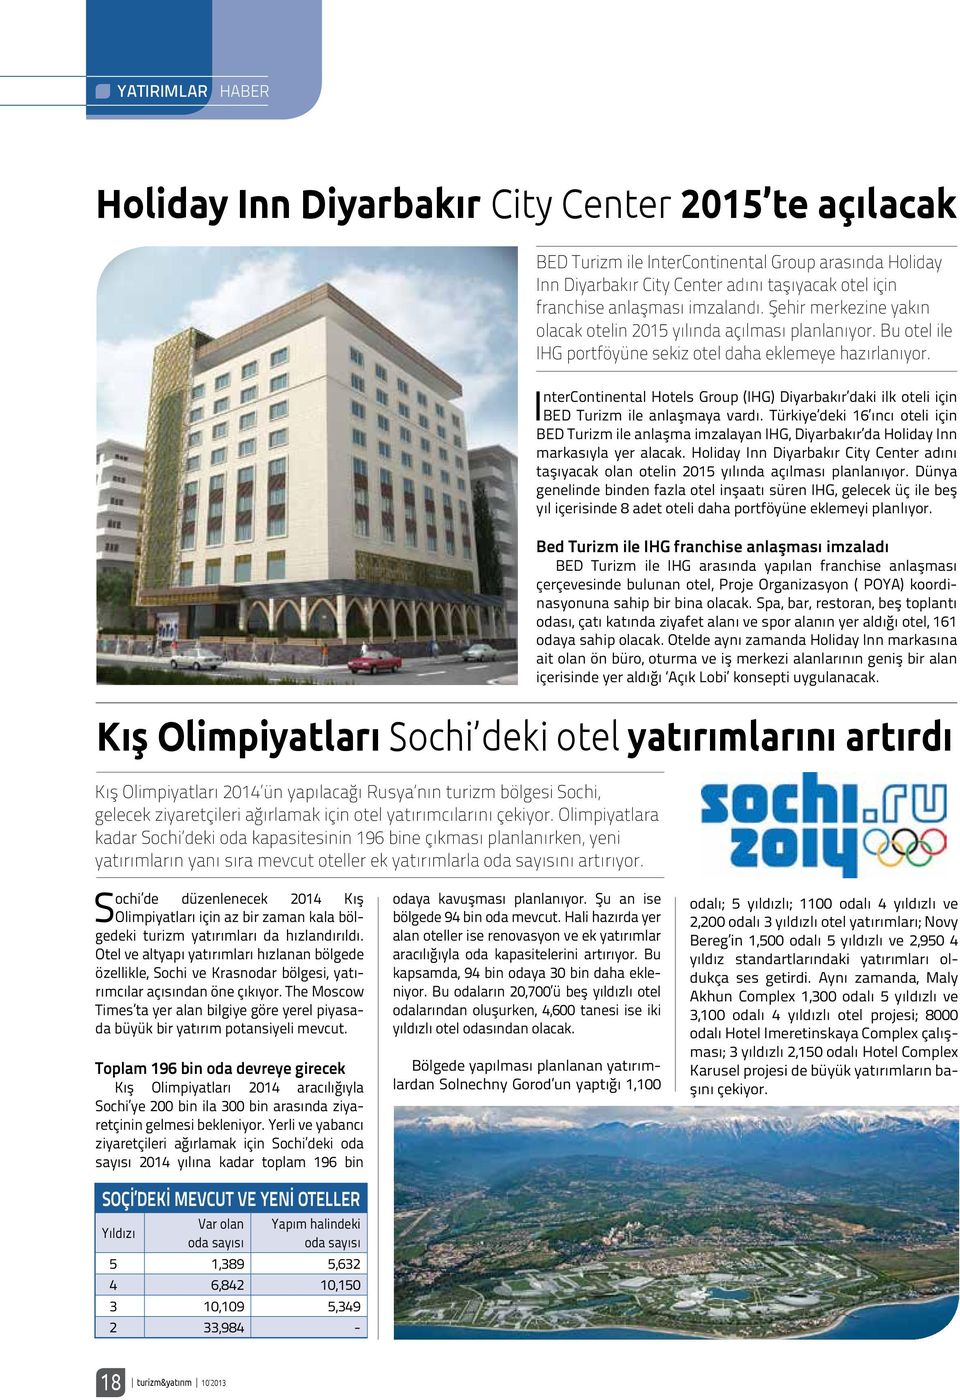 InterContinental Hotels Group (IHG) Diyarbakır daki ilk oteli için BED Turizm ile anlaşmaya vardı.